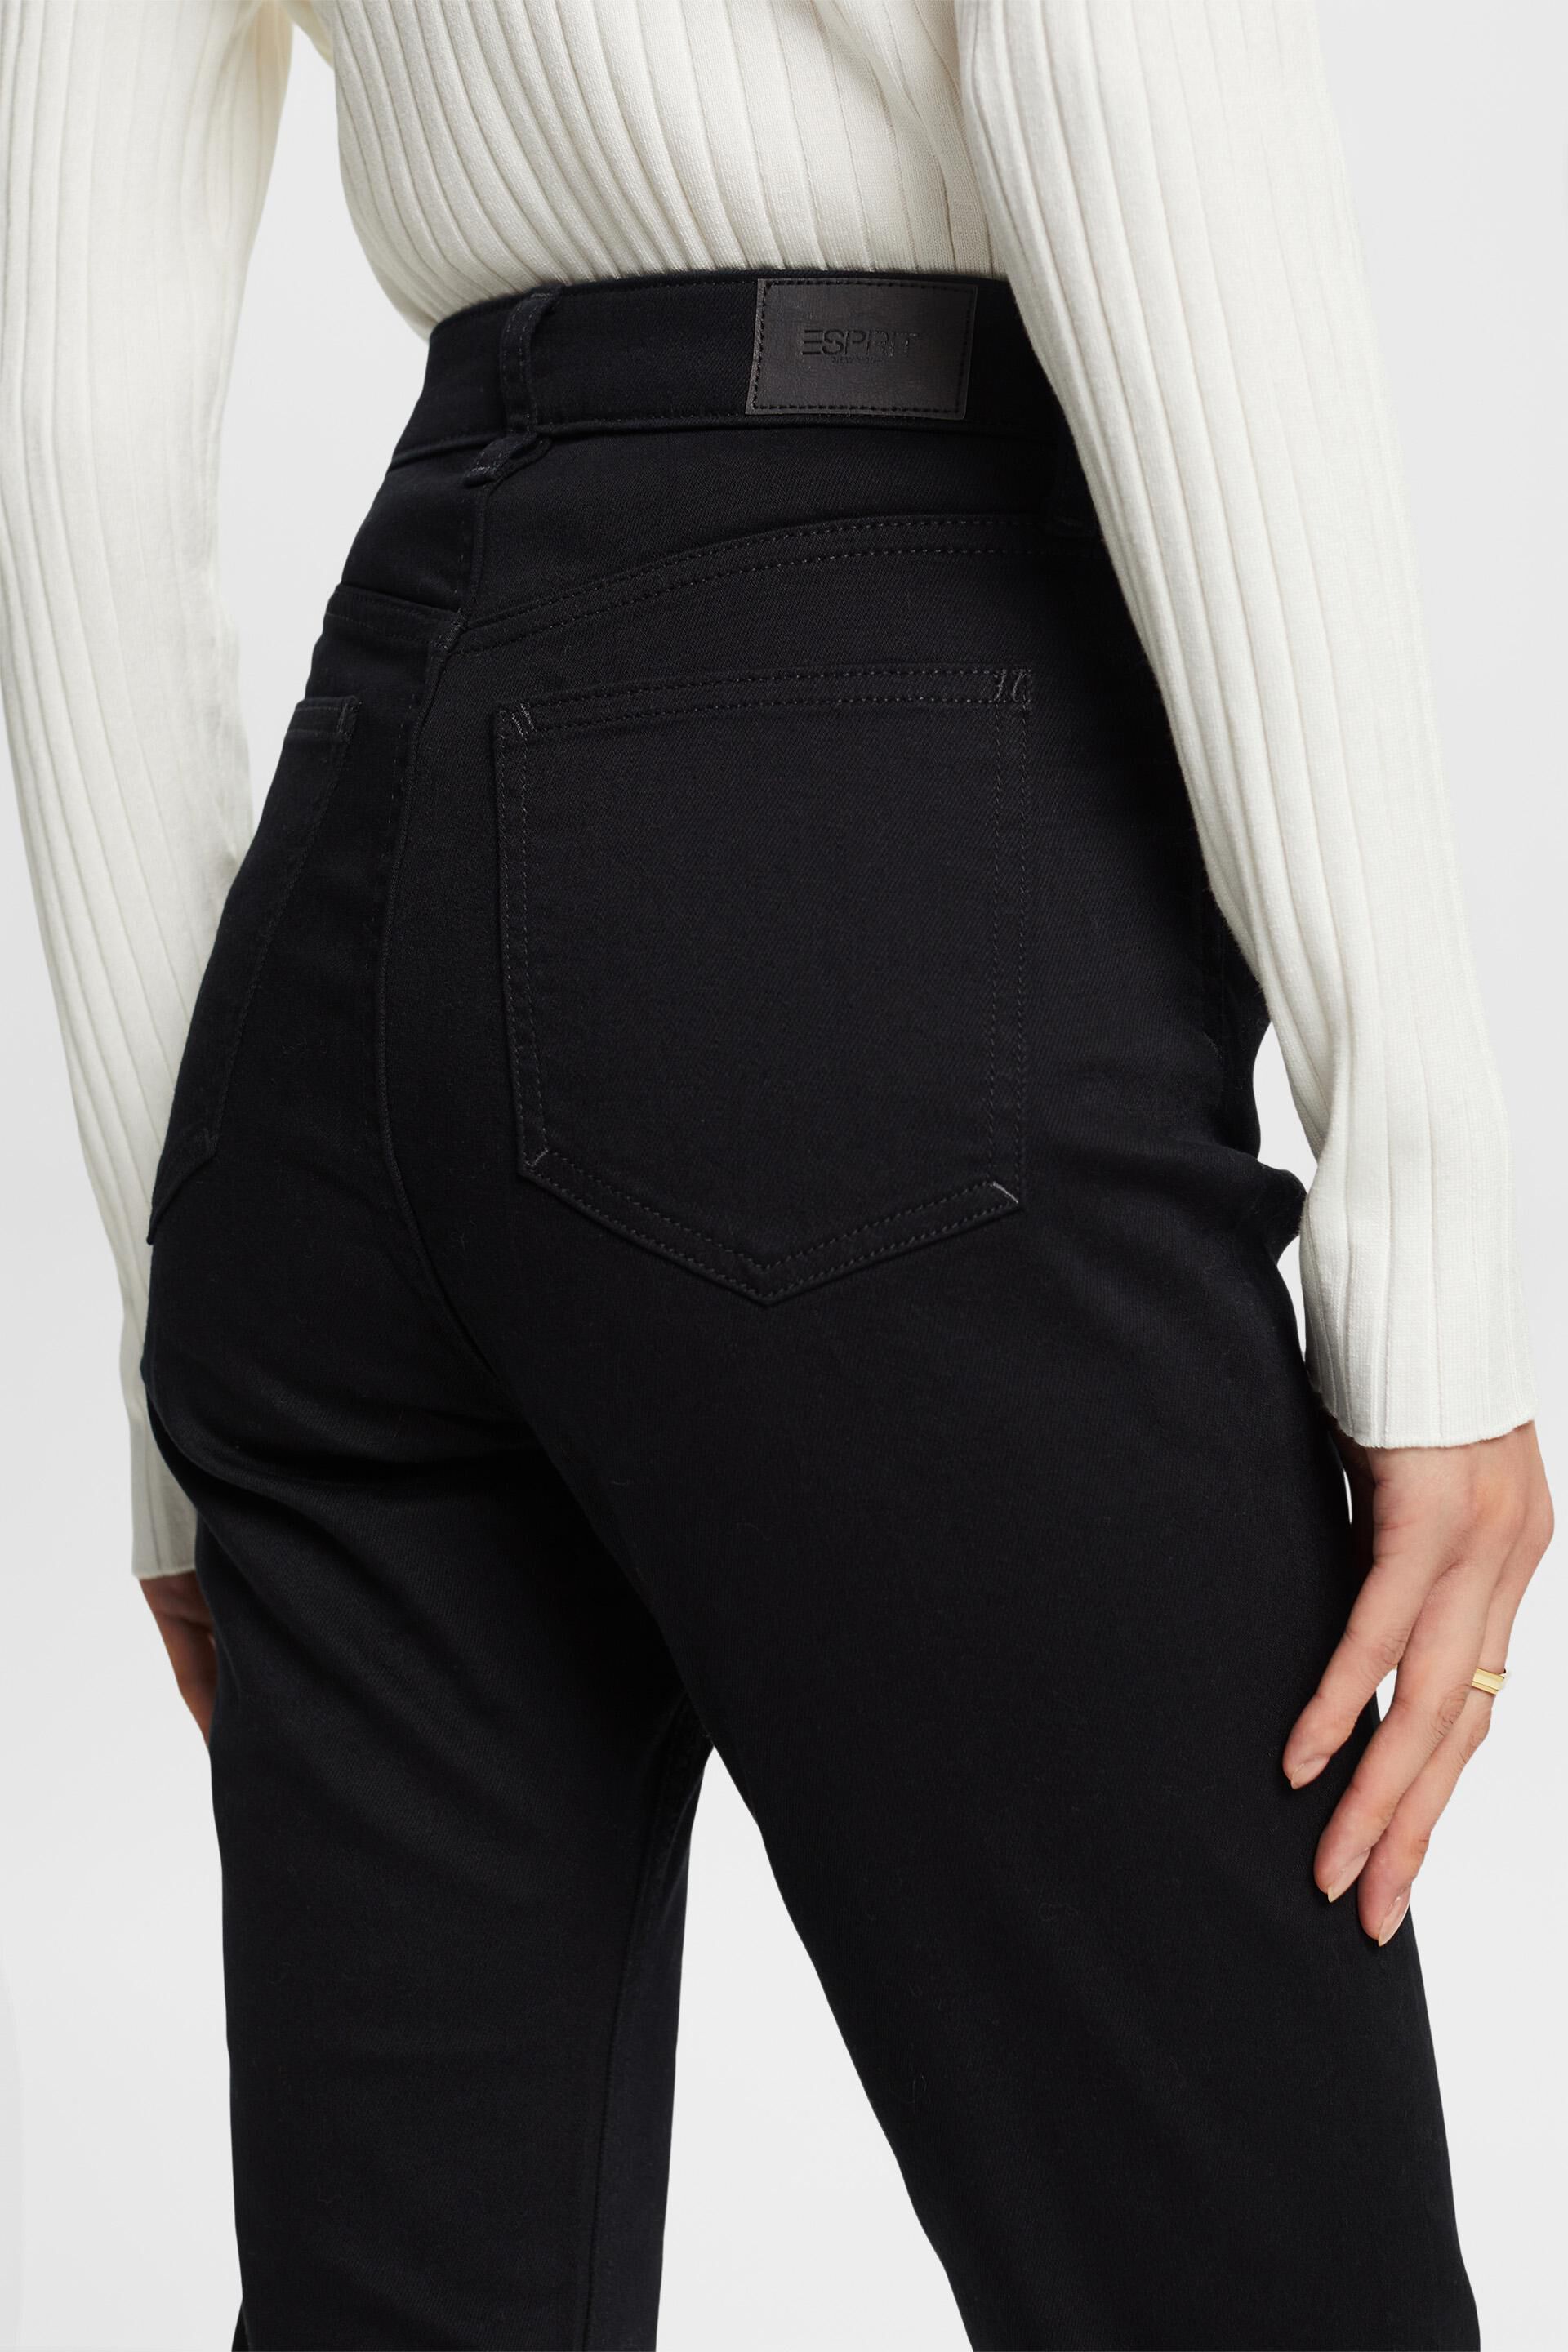 Esprit Damen Bootcut-Jeans mit hohem Bund